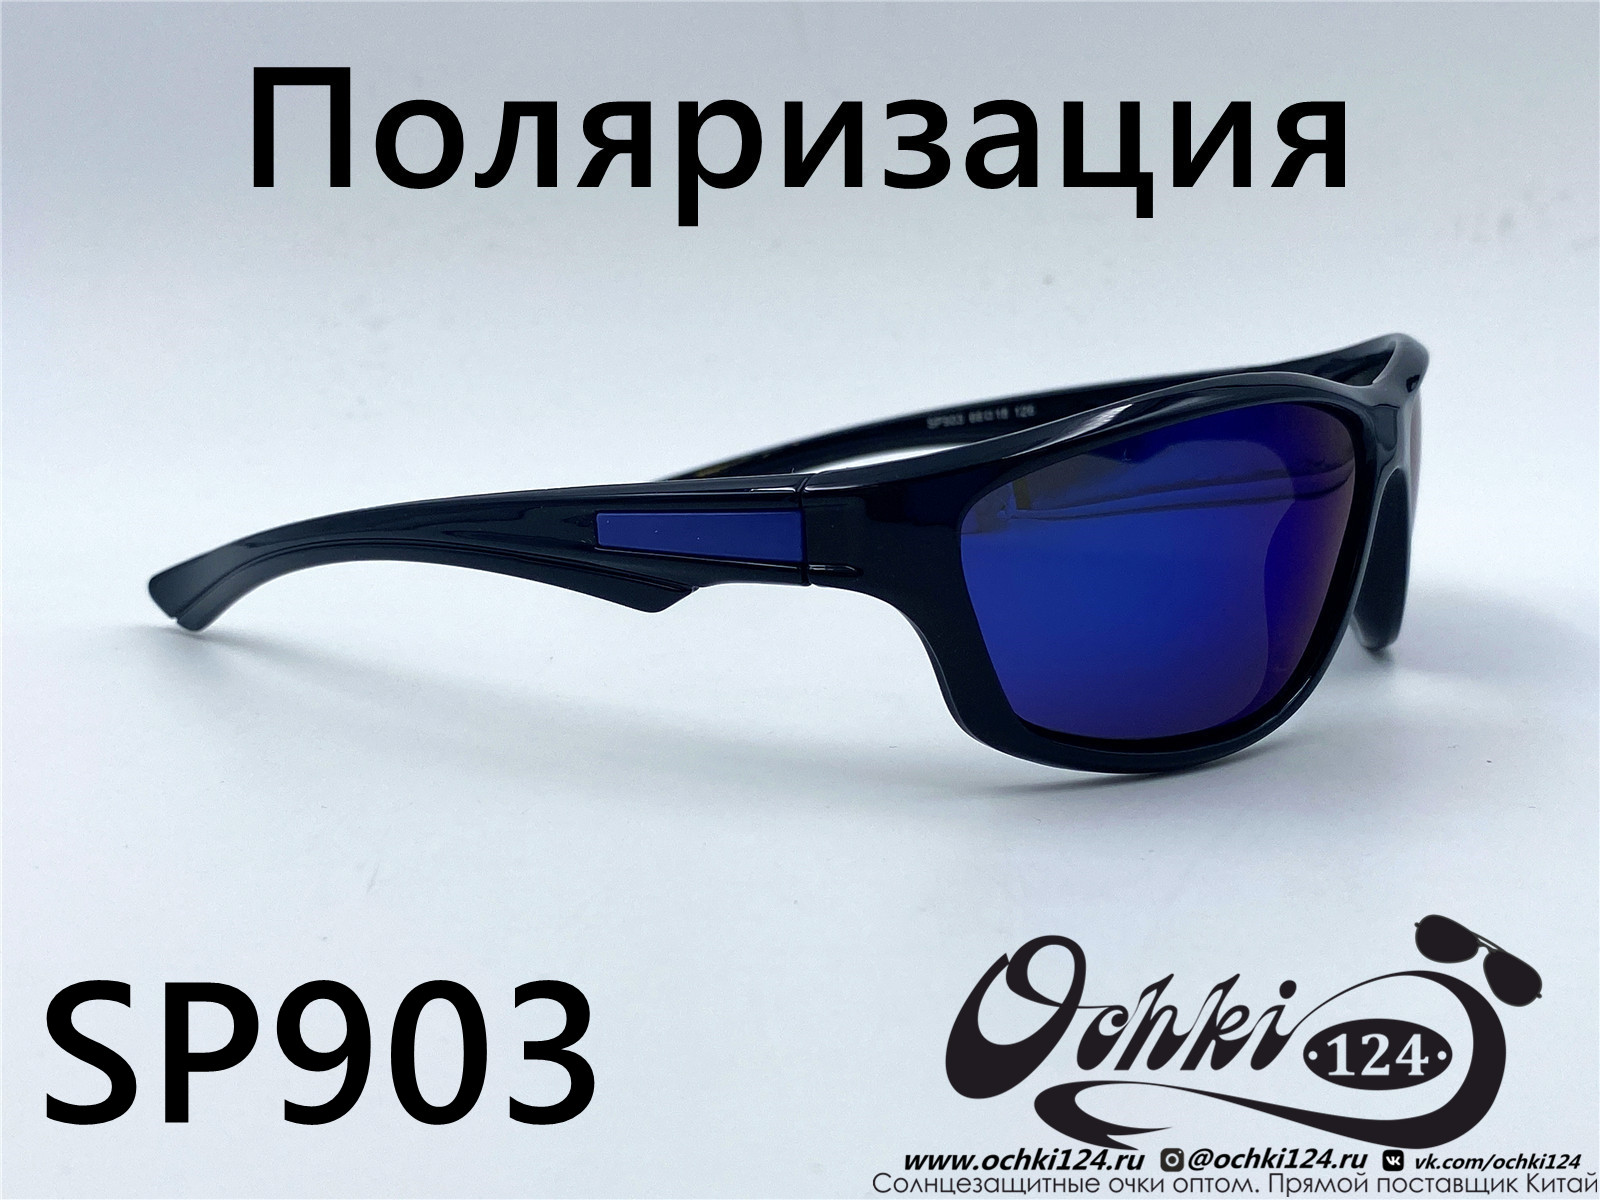  Солнцезащитные очки картинка 2022 Мужские Поляризованные Спорт Materice SP903-8 